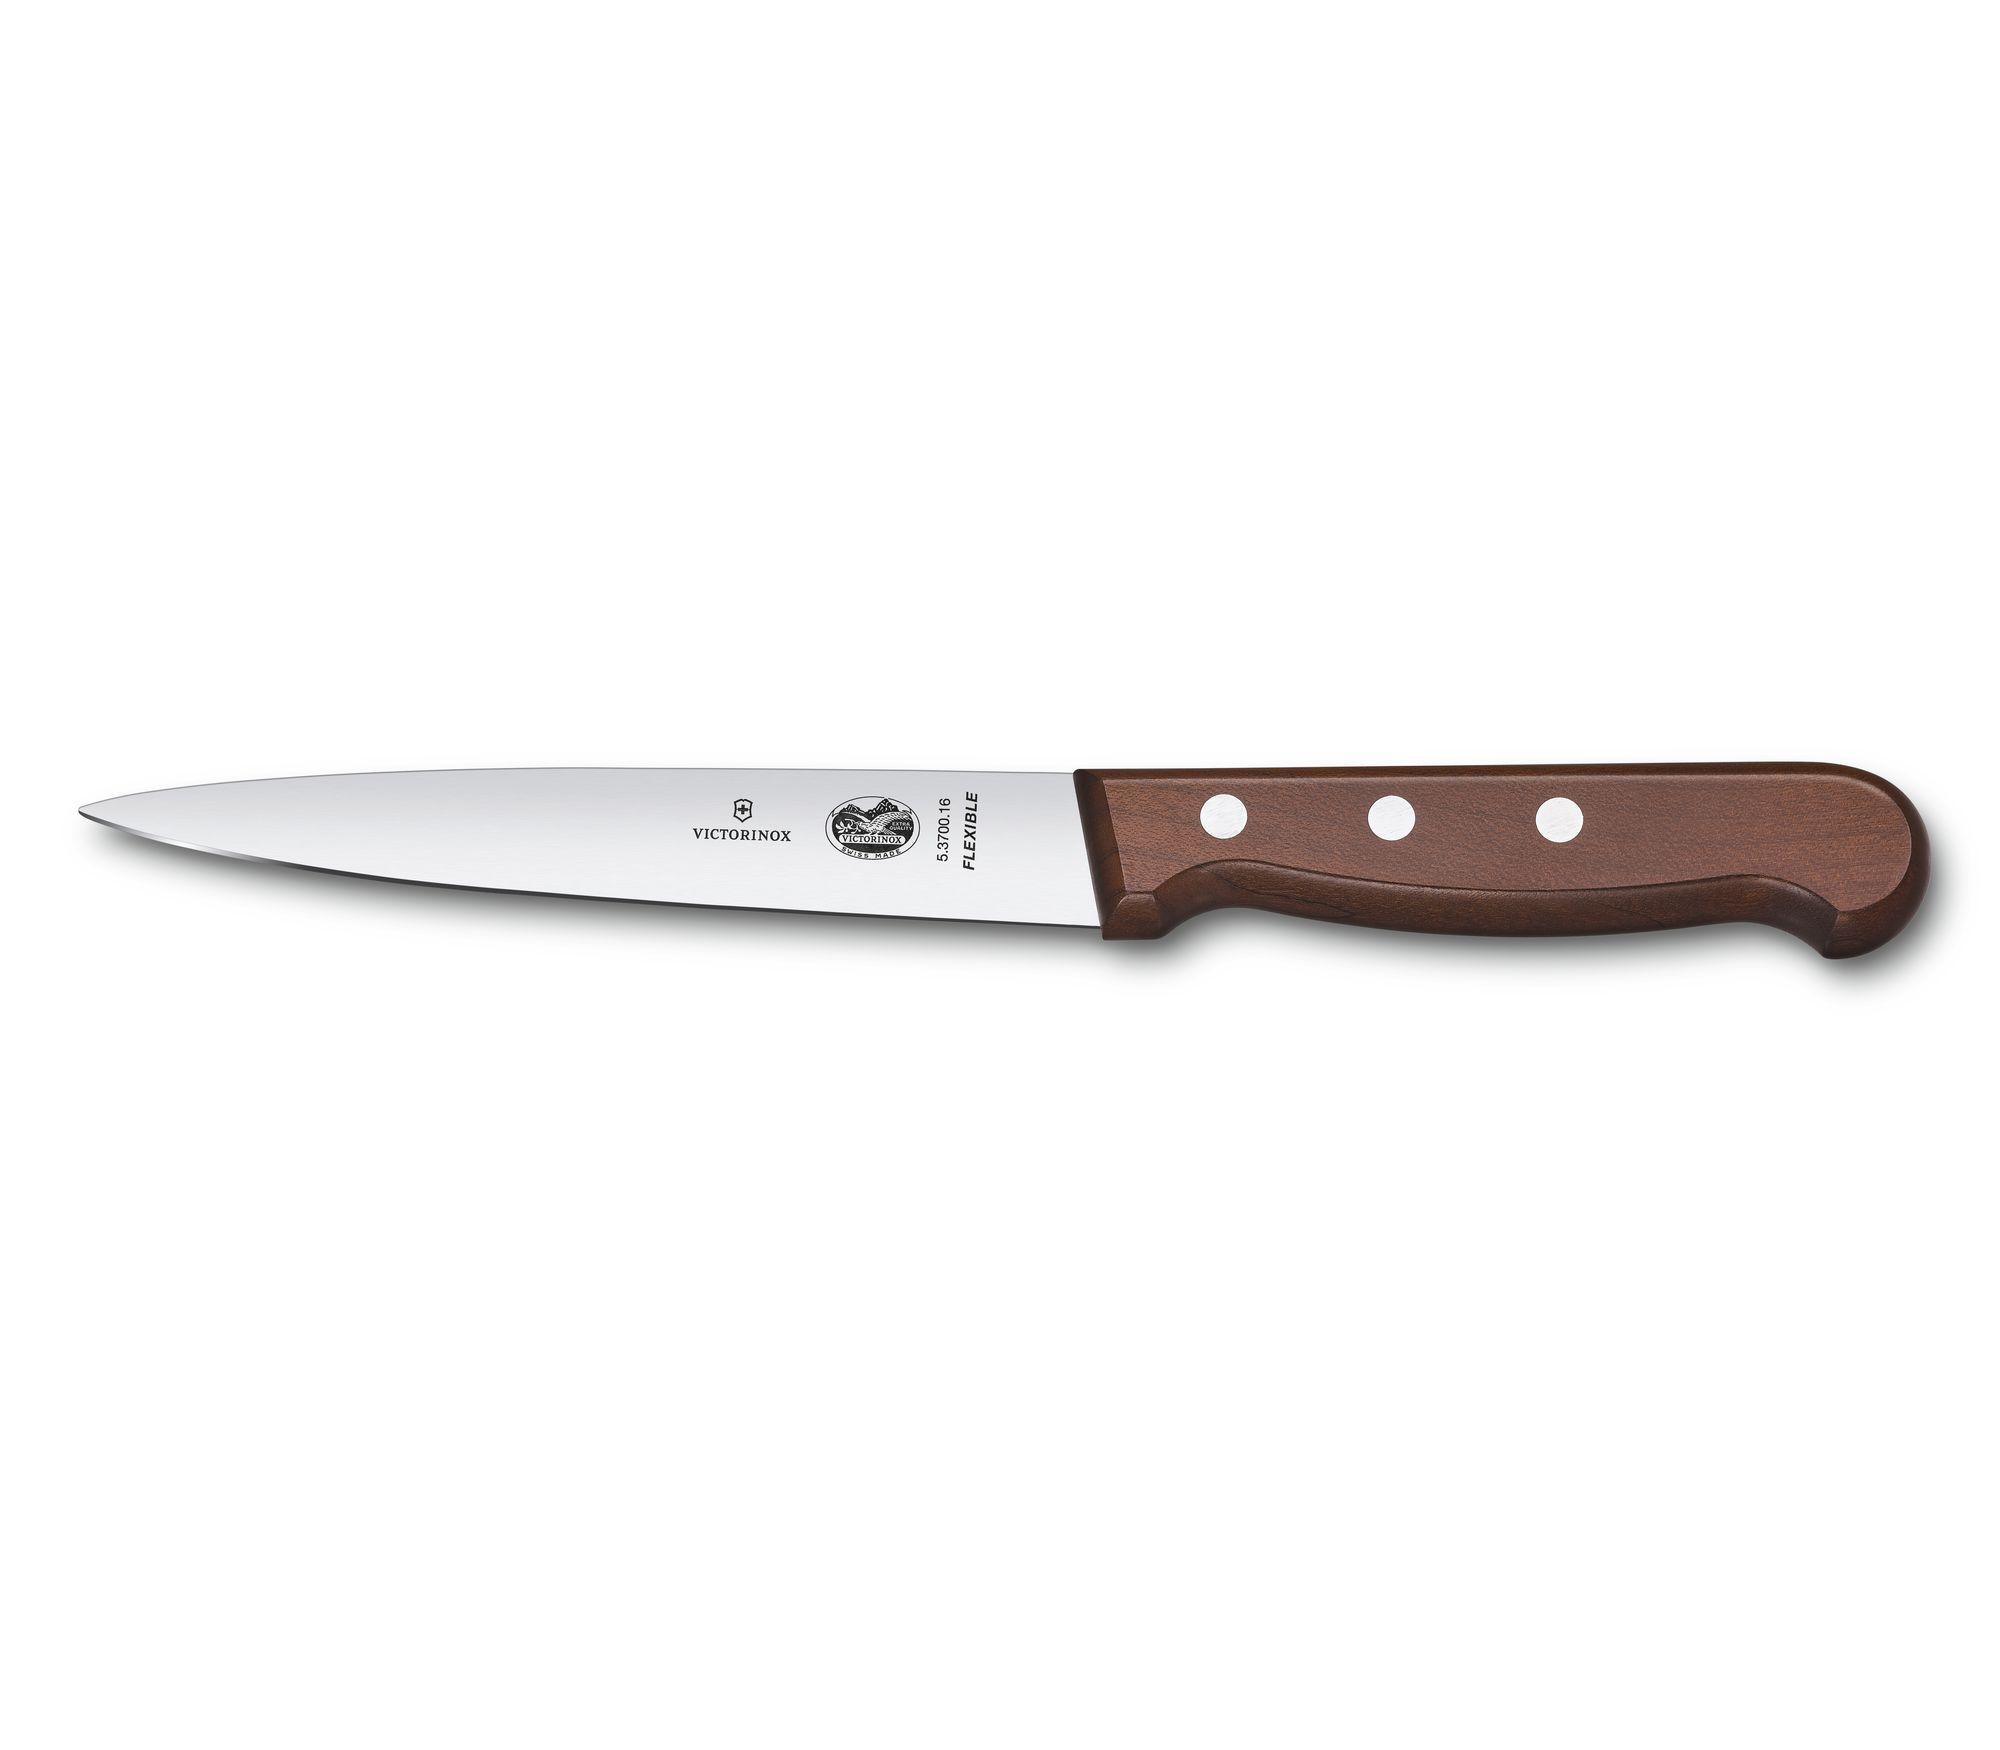 Couteau filet sole / dénerver Victorinox Wood - manche érable